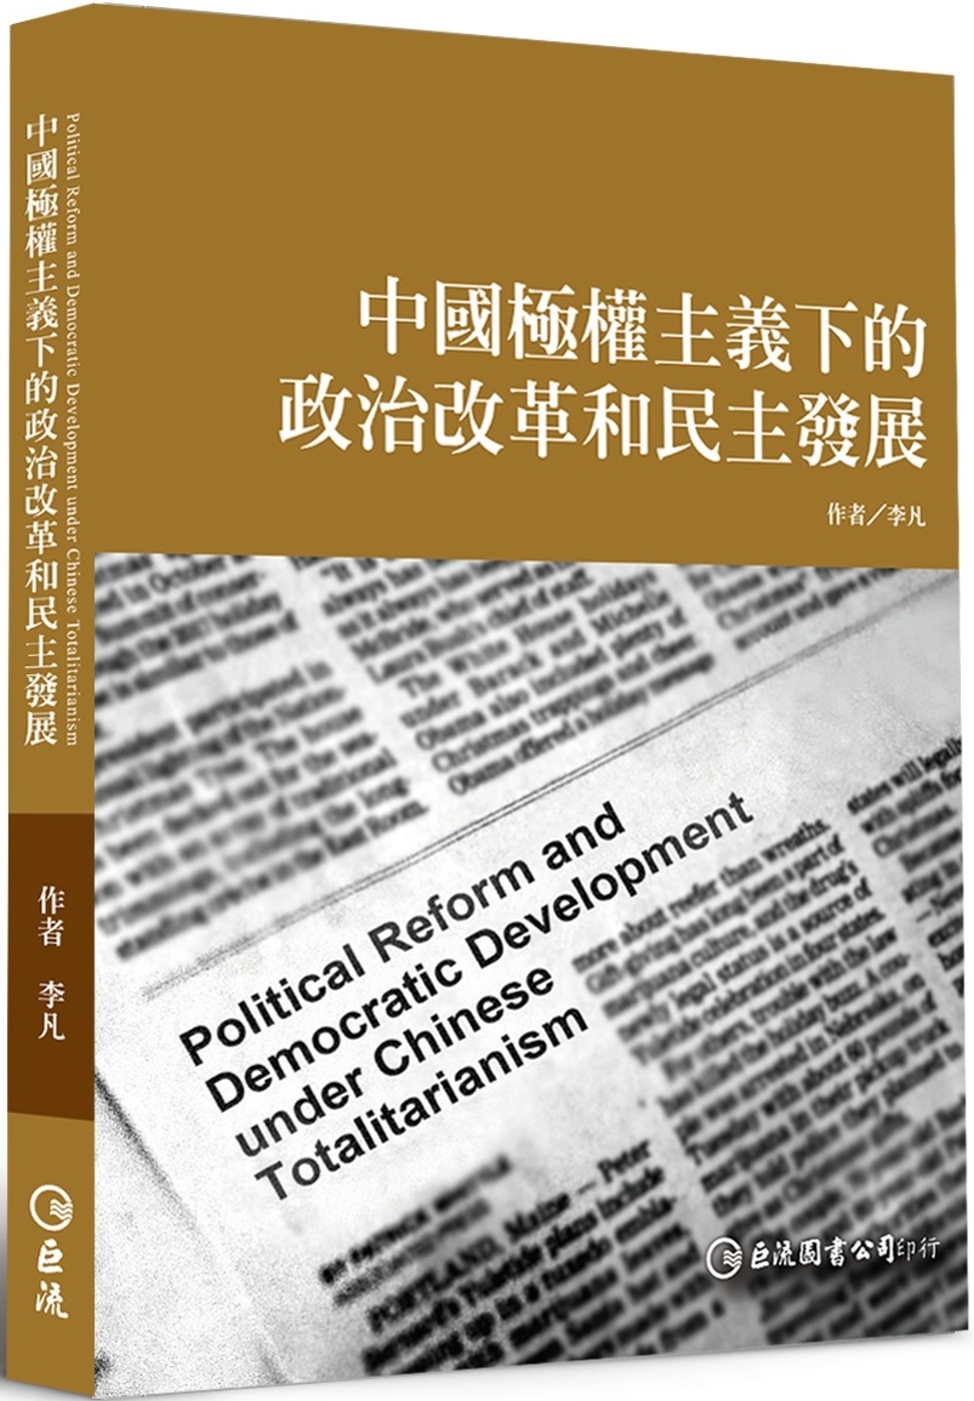 中國極權主義下的政治改革和民主發展